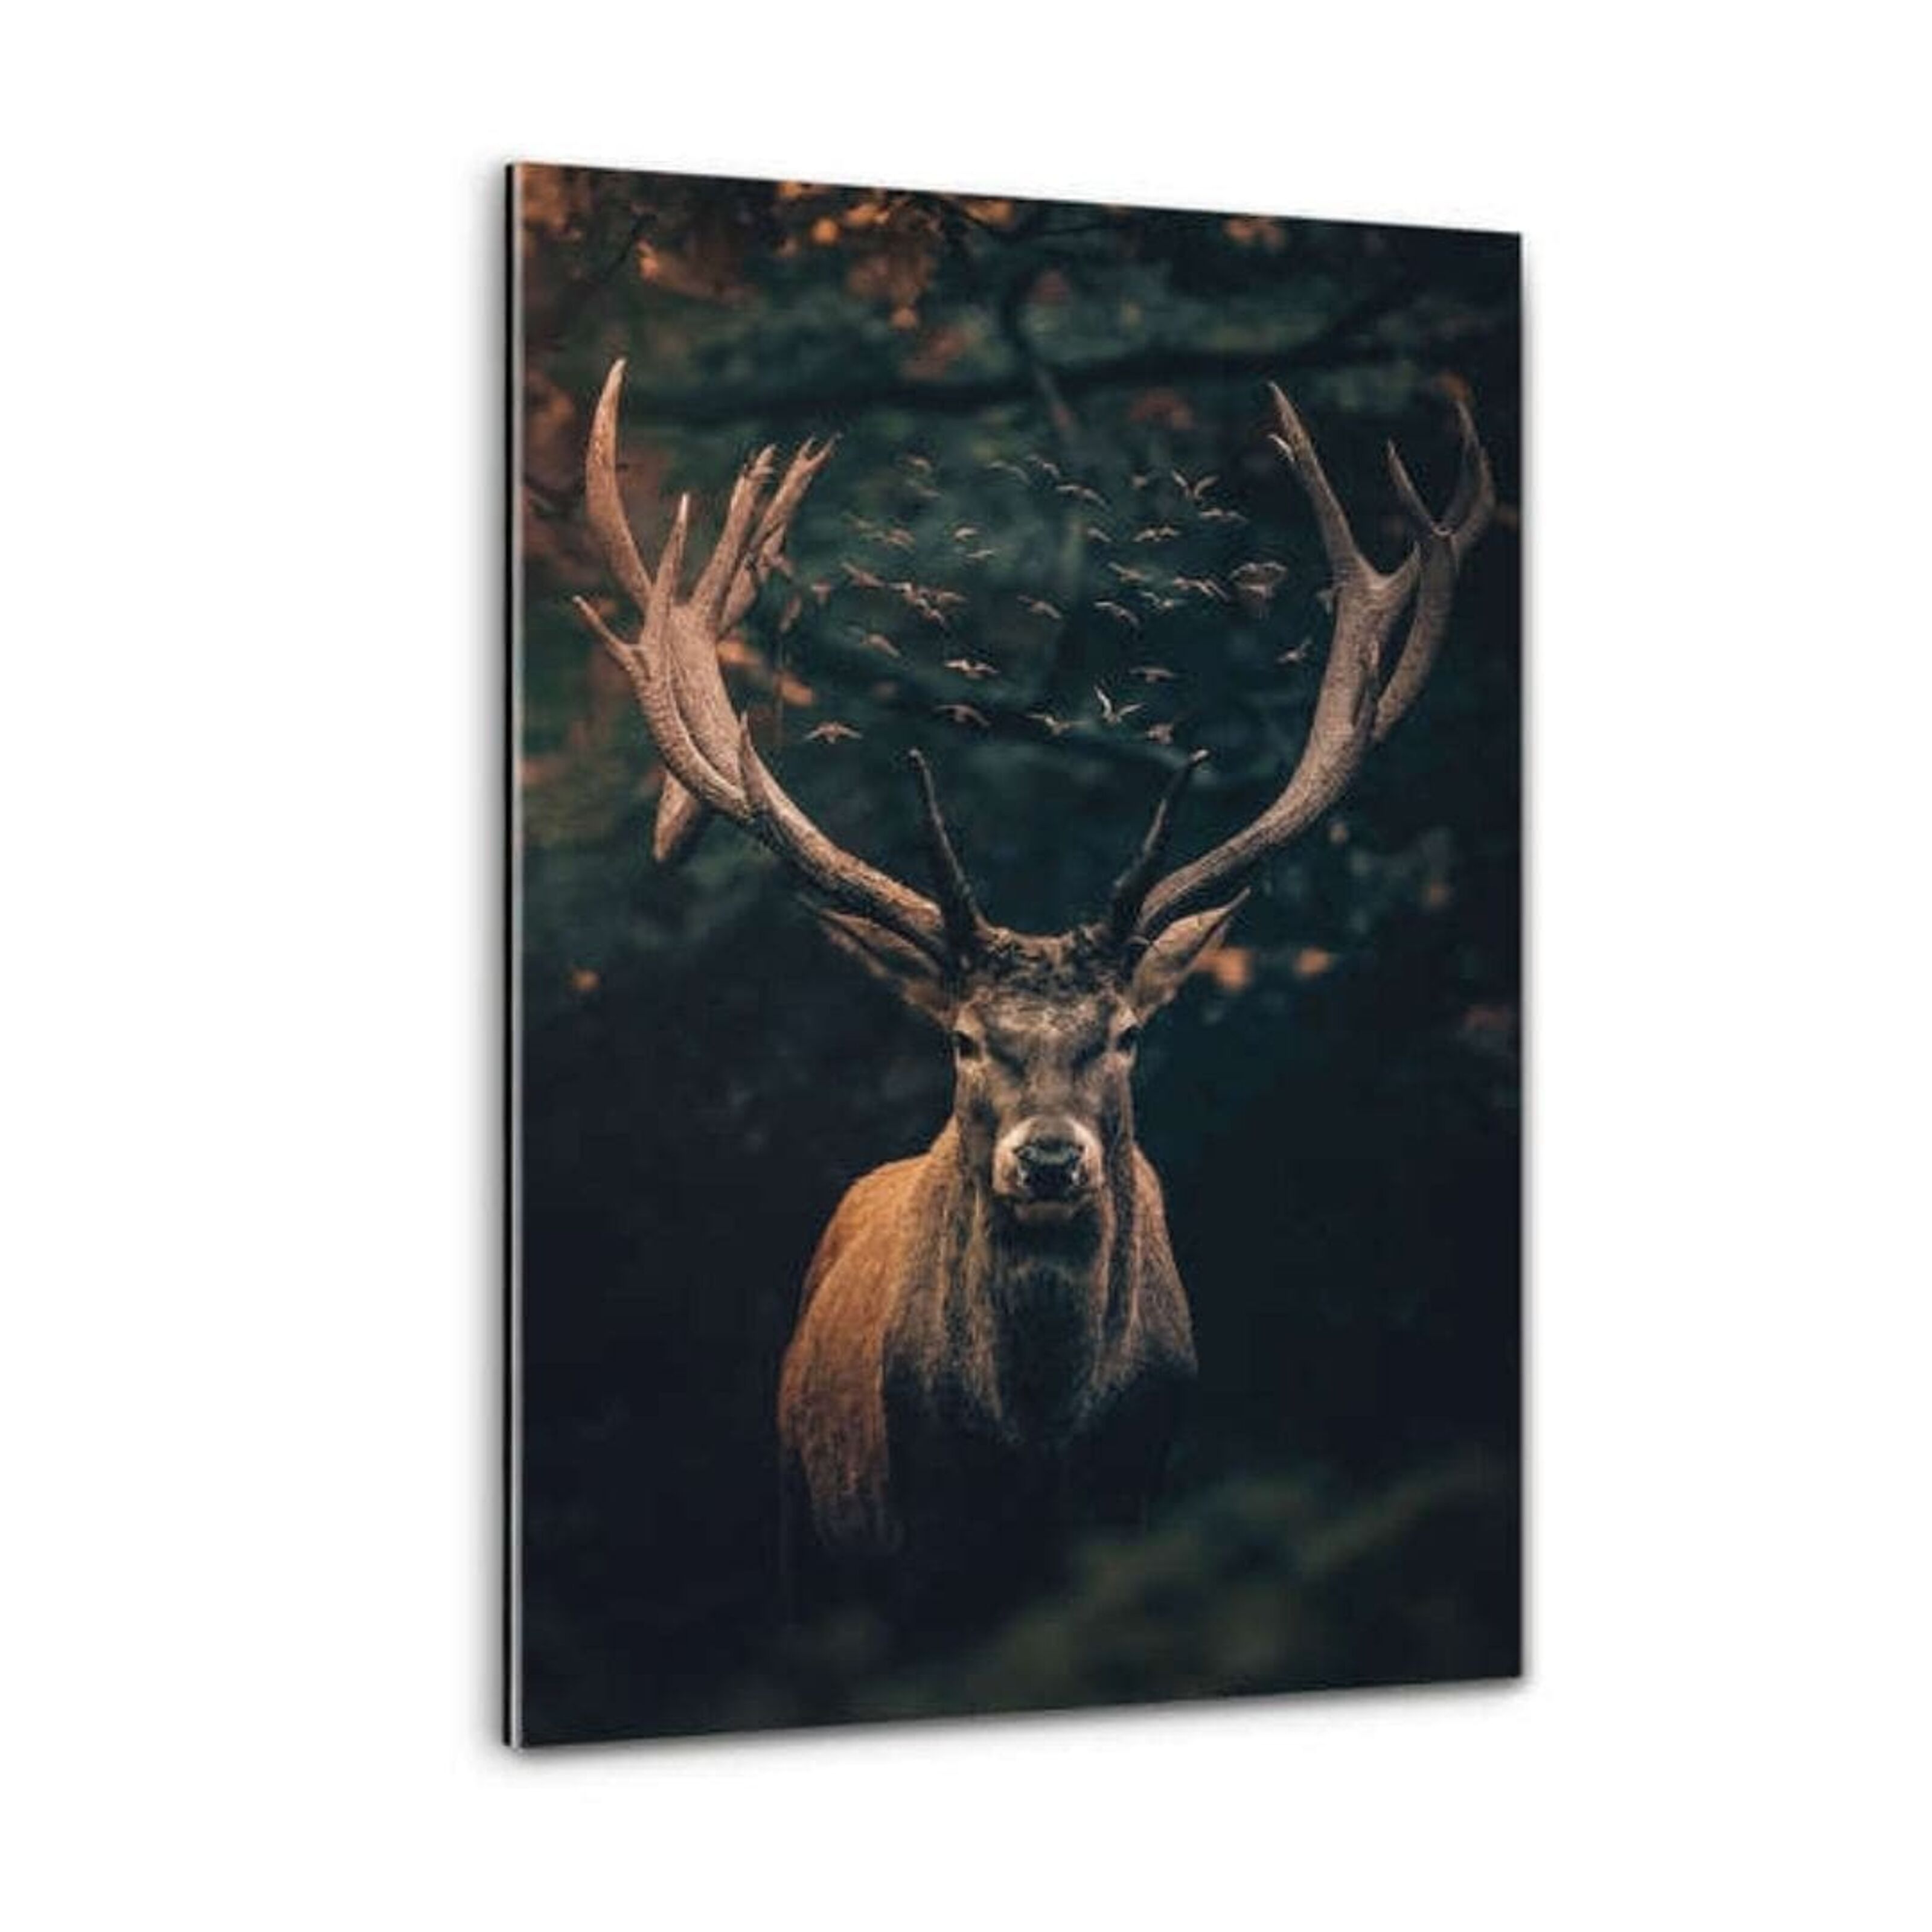 Buy wholesale Moody Deer - plexiglass image